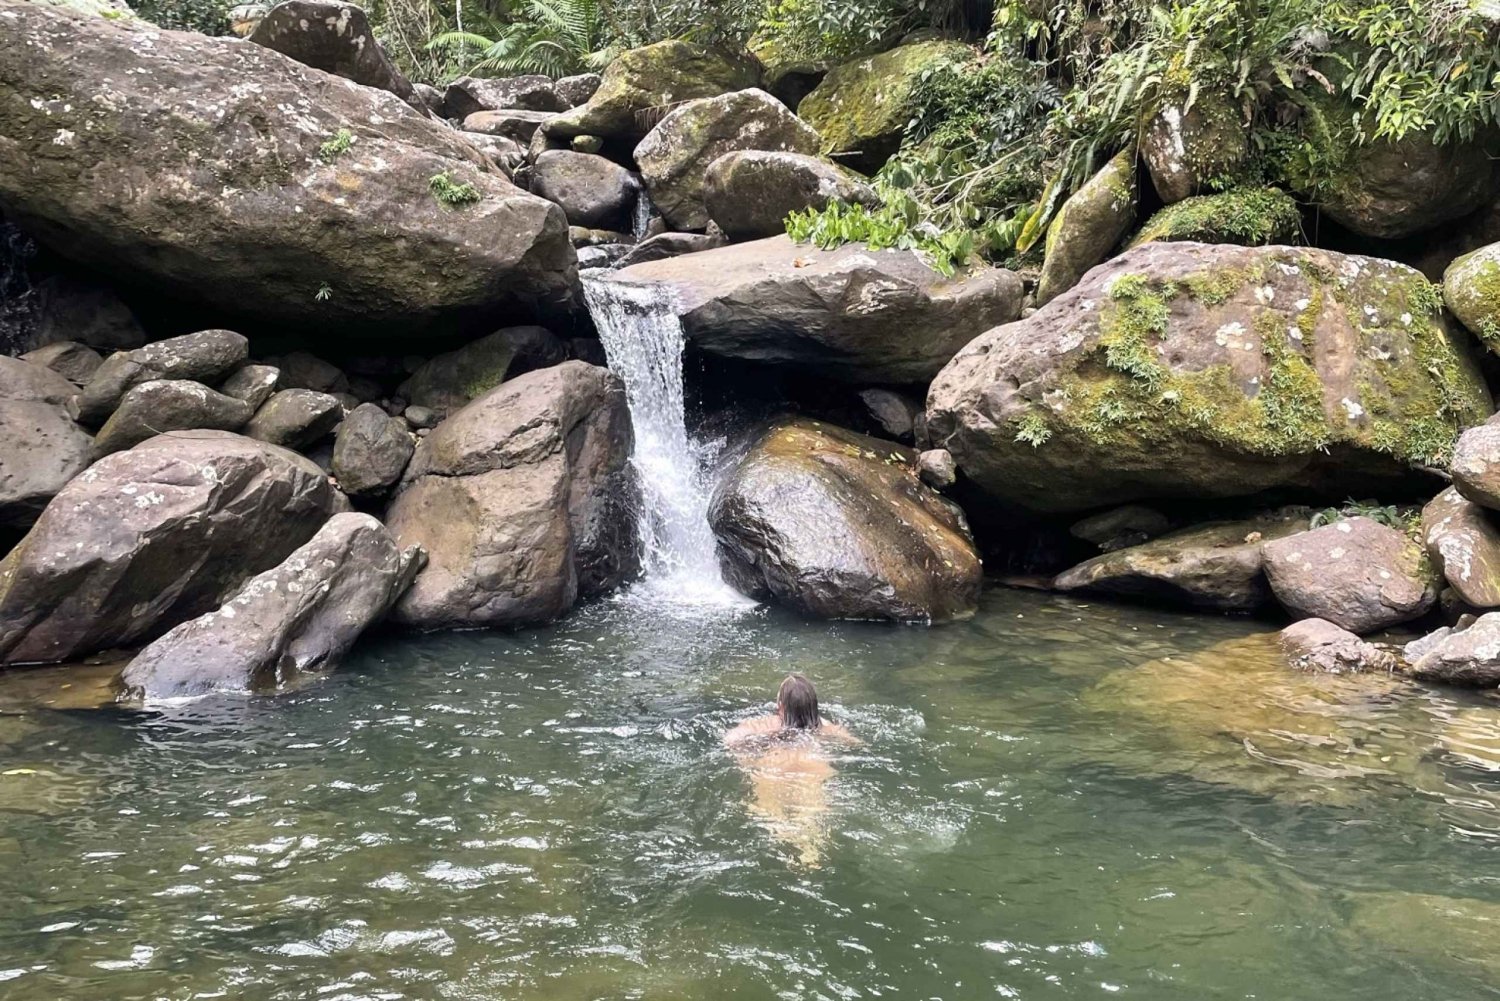 El Yunque: Verborgen watervalwandeling buiten het pad met vervoer